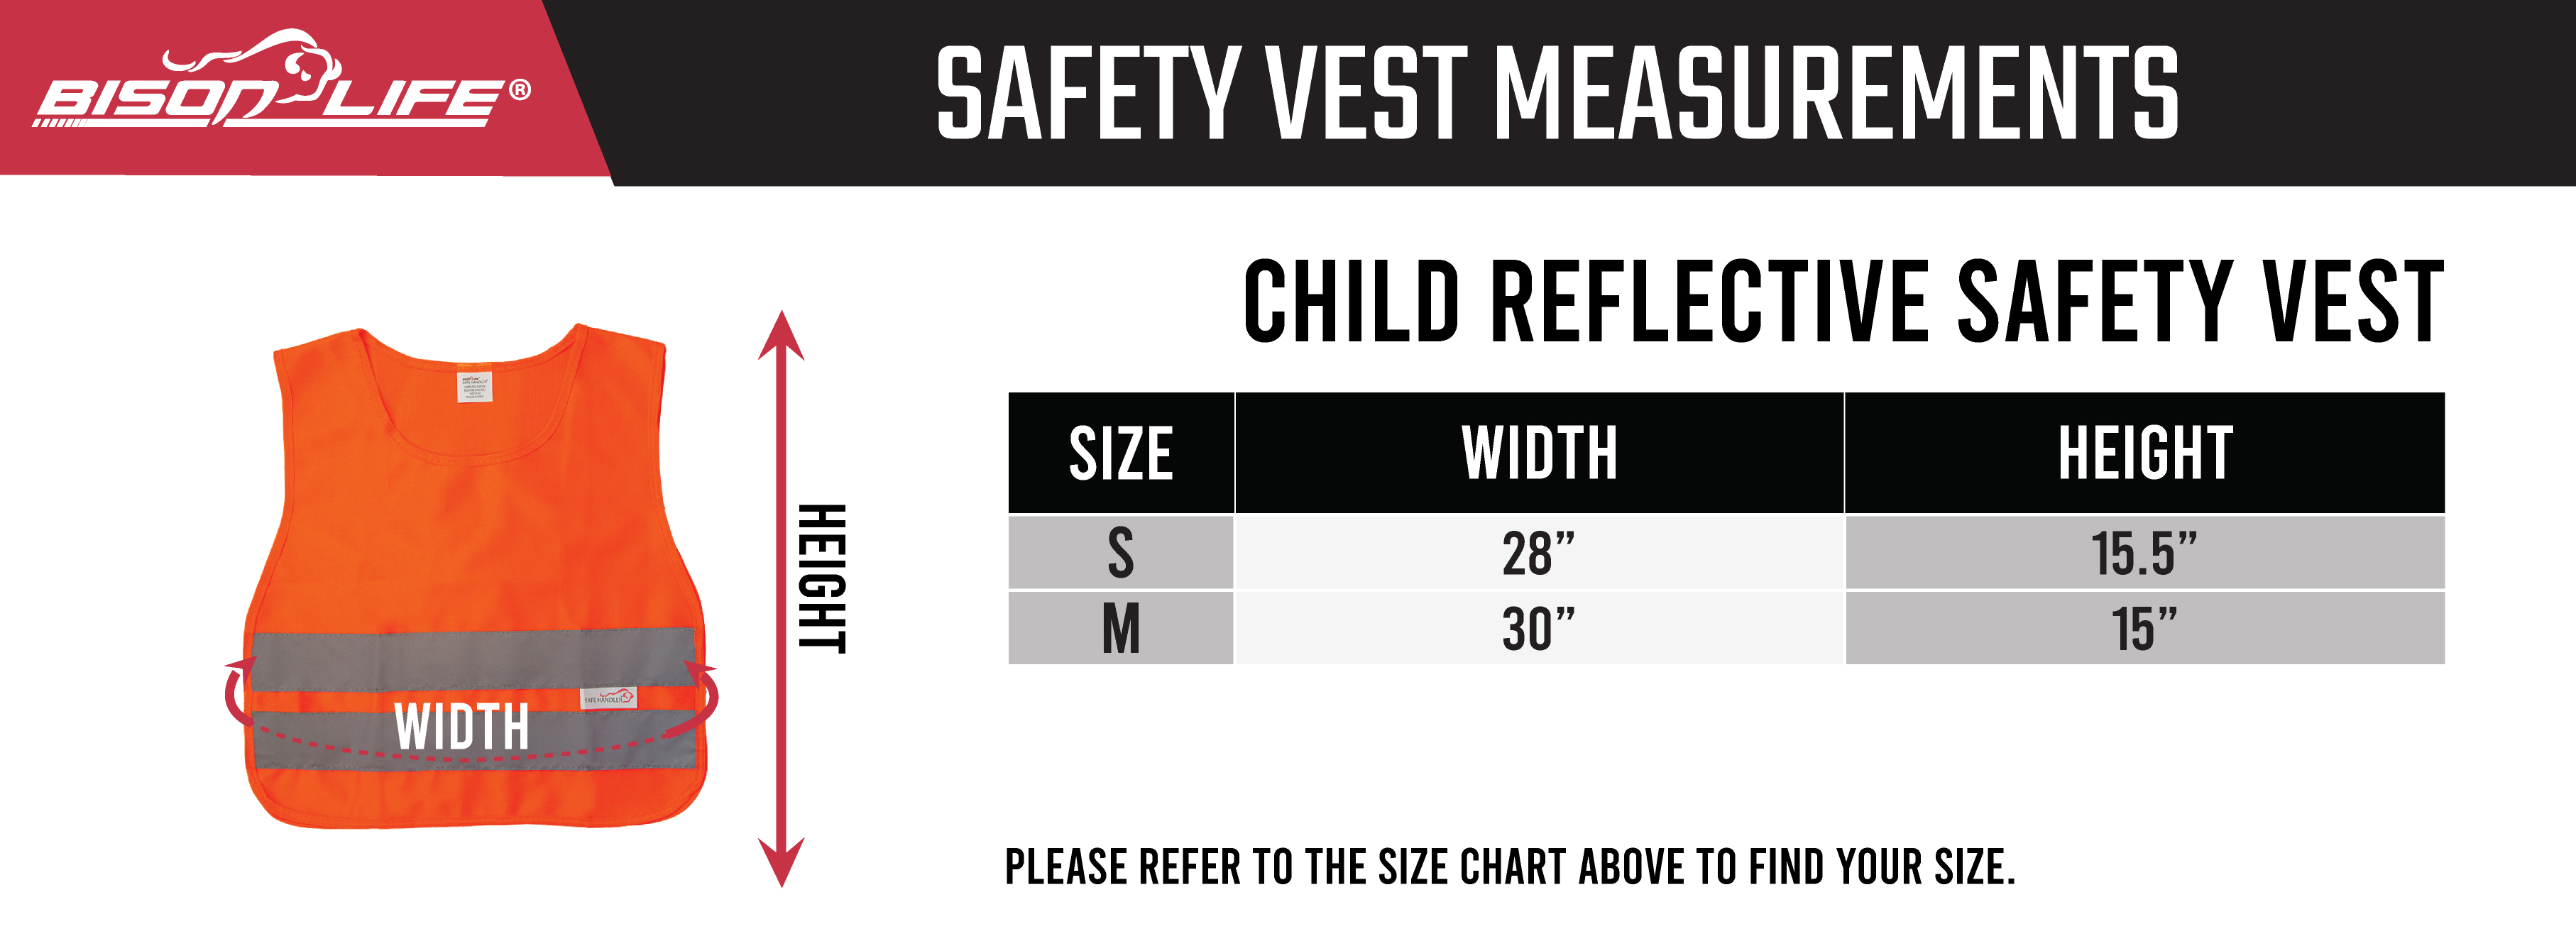 Child Reflective Safety Vest Size Chart